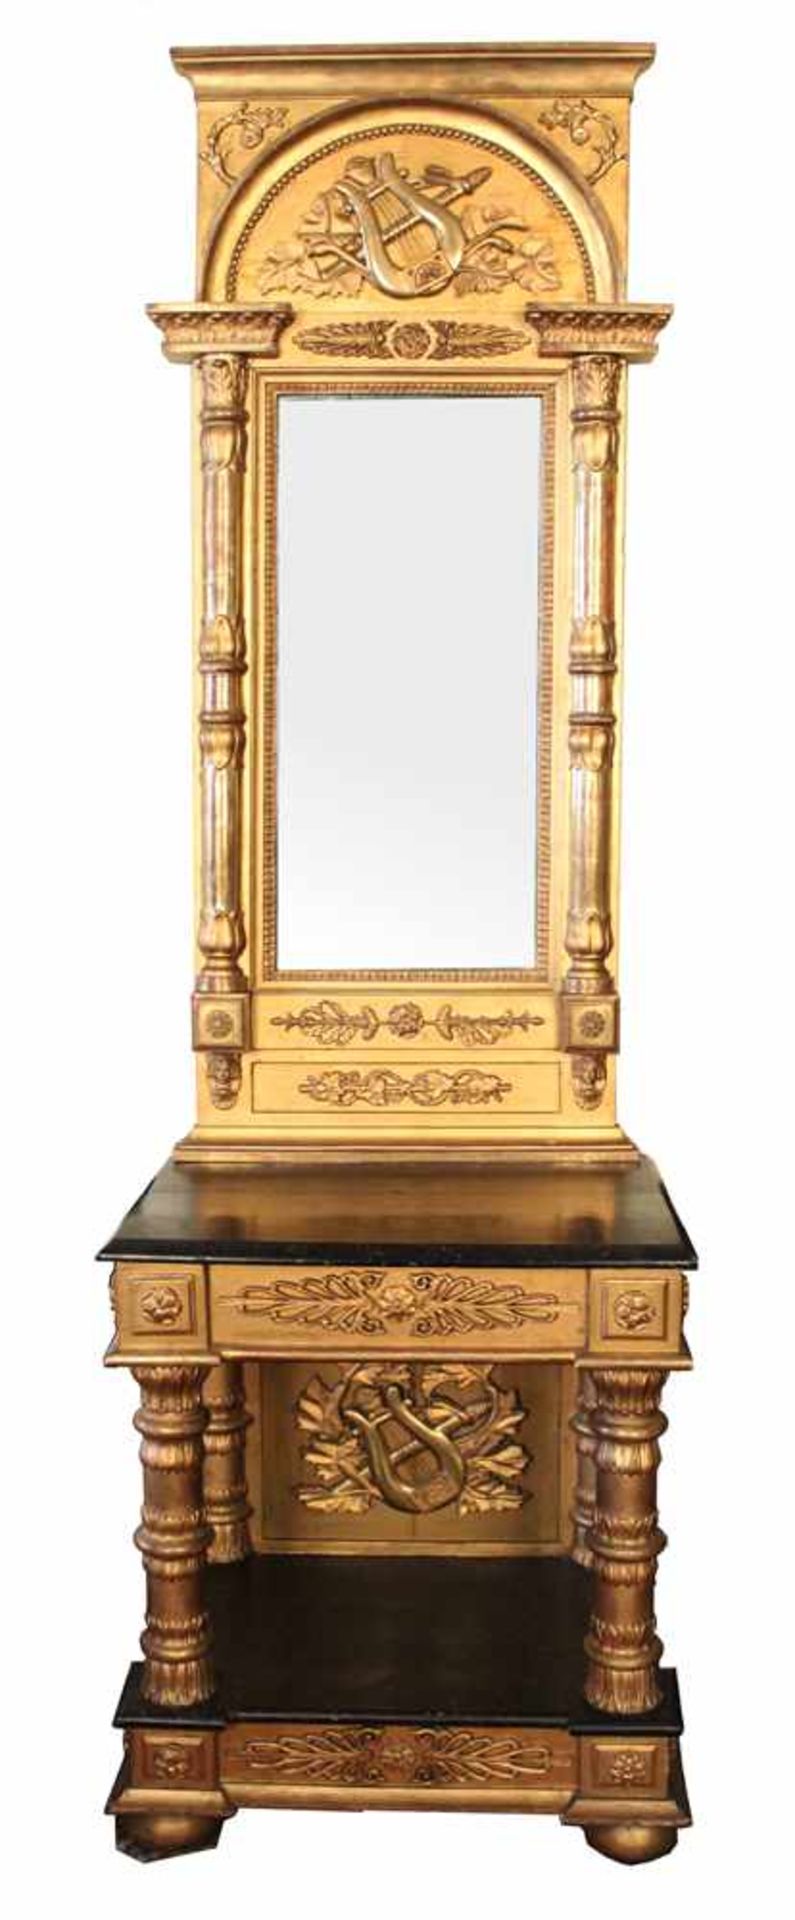 Spiegel mit Konsole.Norddeutsch, um 1800. Weichholz, geschnitzt und vergoldet. Aufgelegte plastische